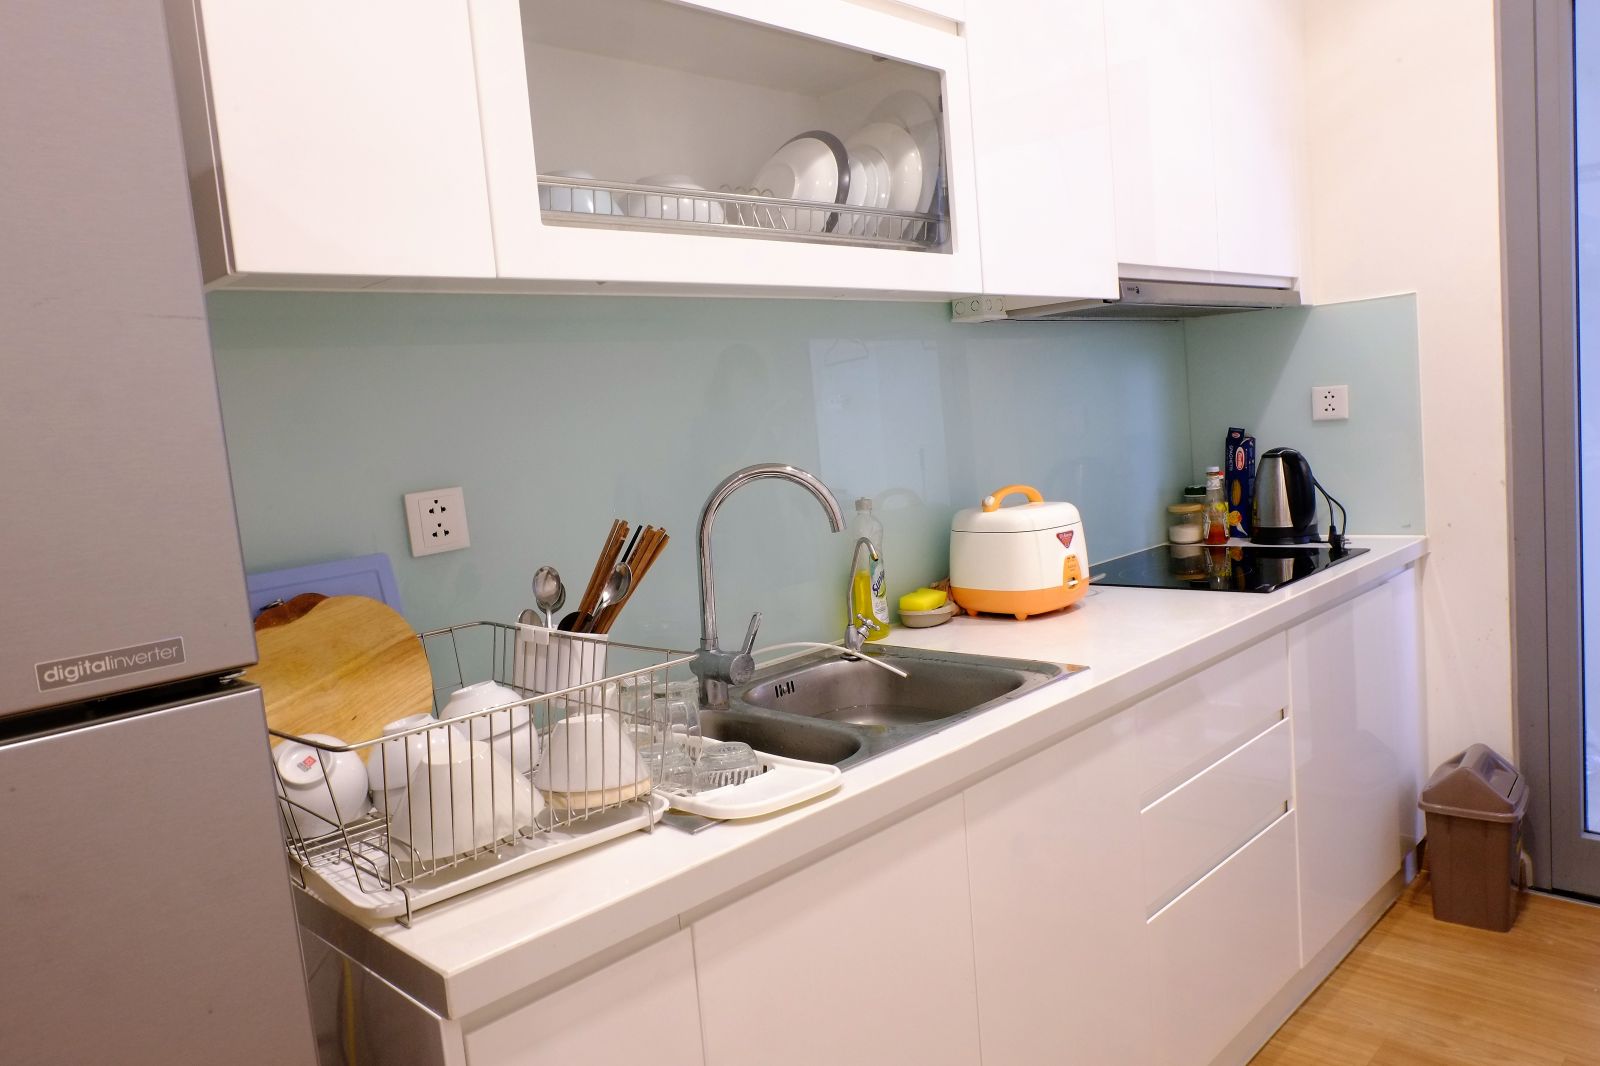 Các tiện ích nhà bếp, nhà vệ sinh tiện nghi, thoải mái đem lại cho khách hàng cảm giác thoái mái như ở nhà.